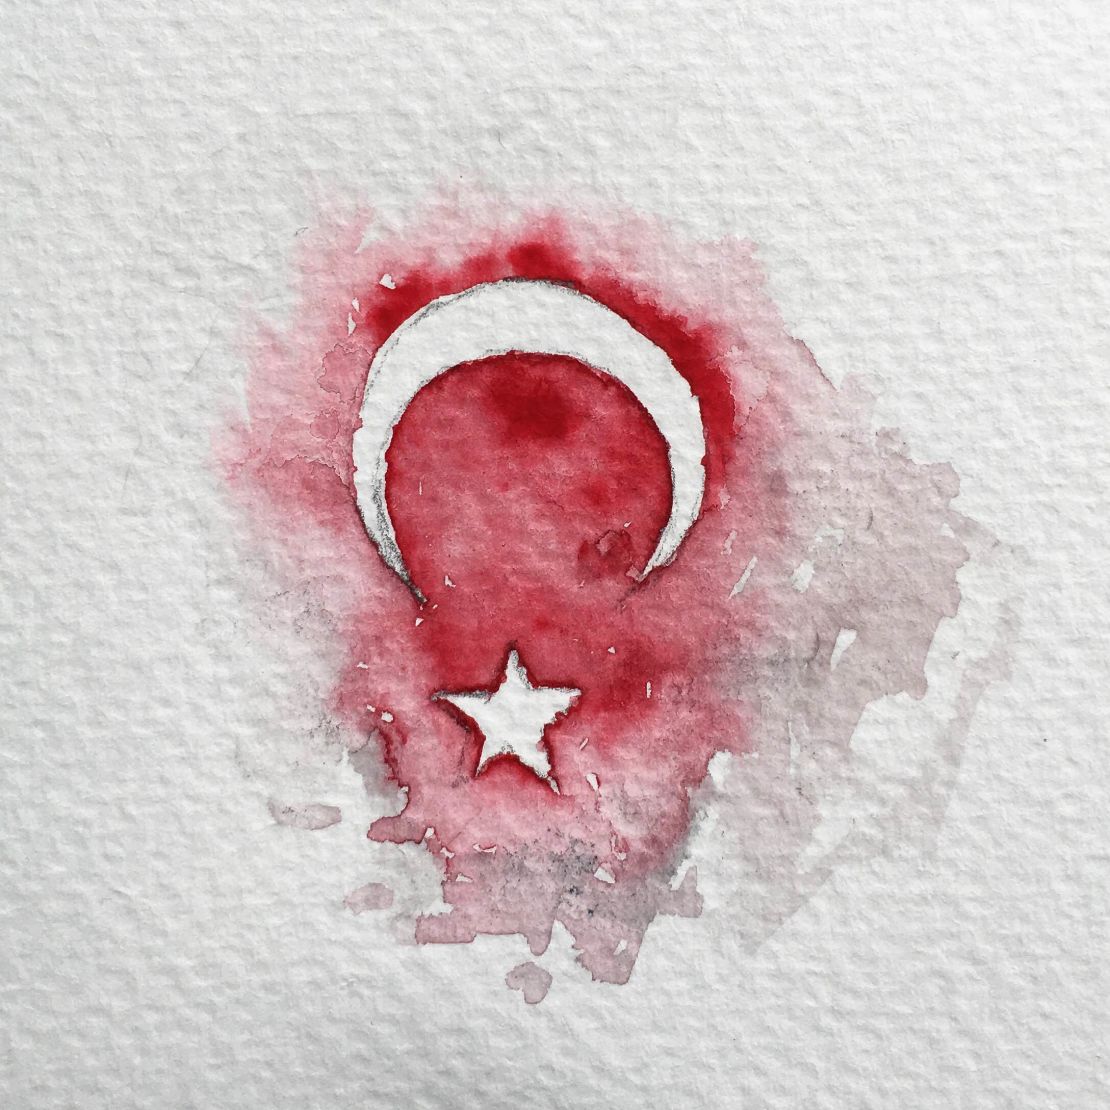 Emir Isik sketched the Turkish flag after Friday's violent night. 